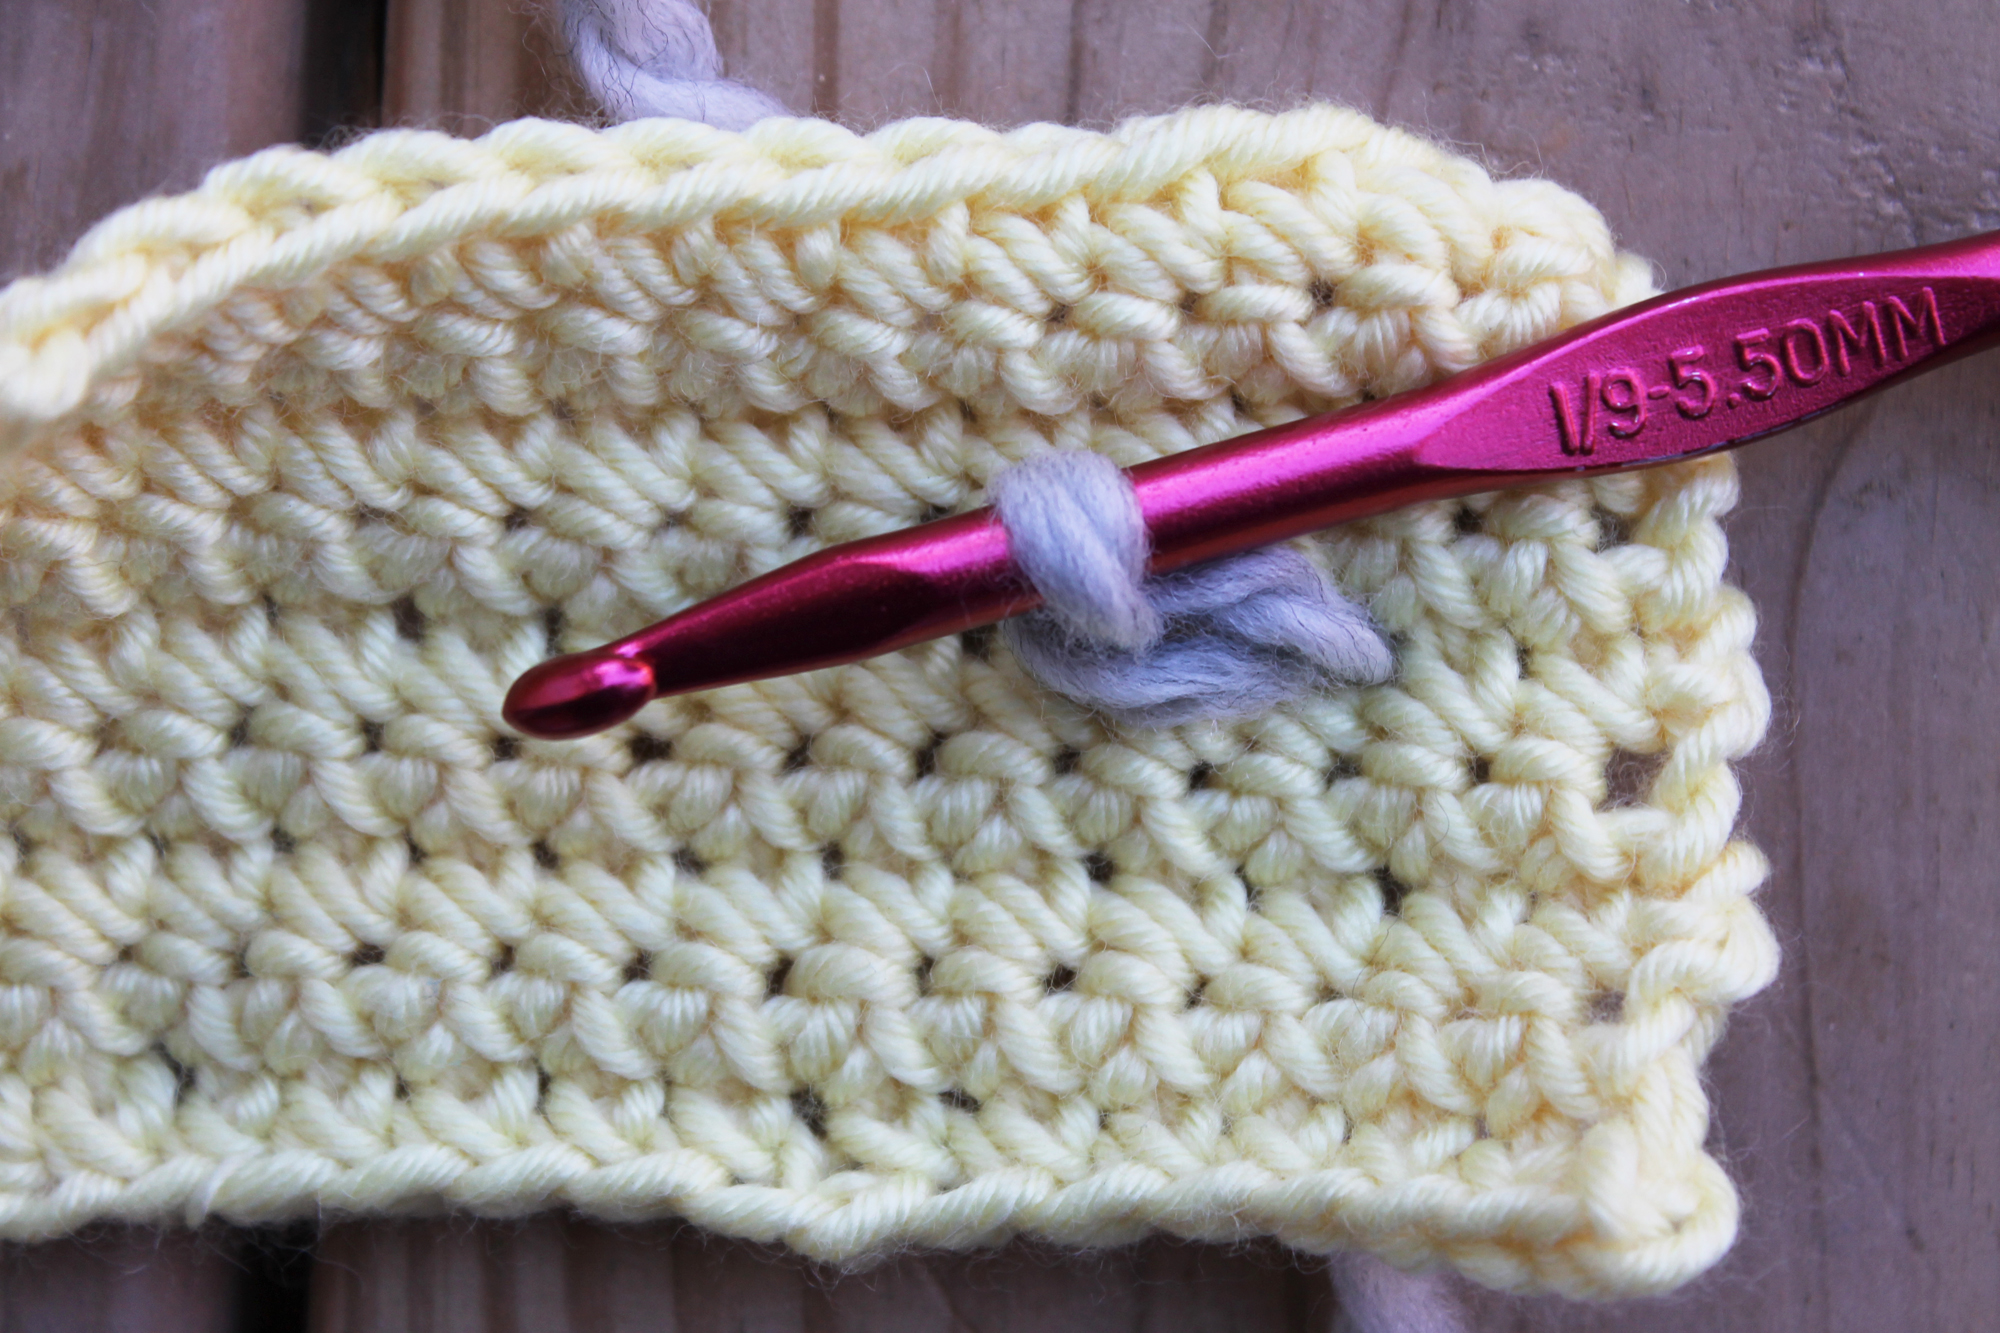 Surface crochet